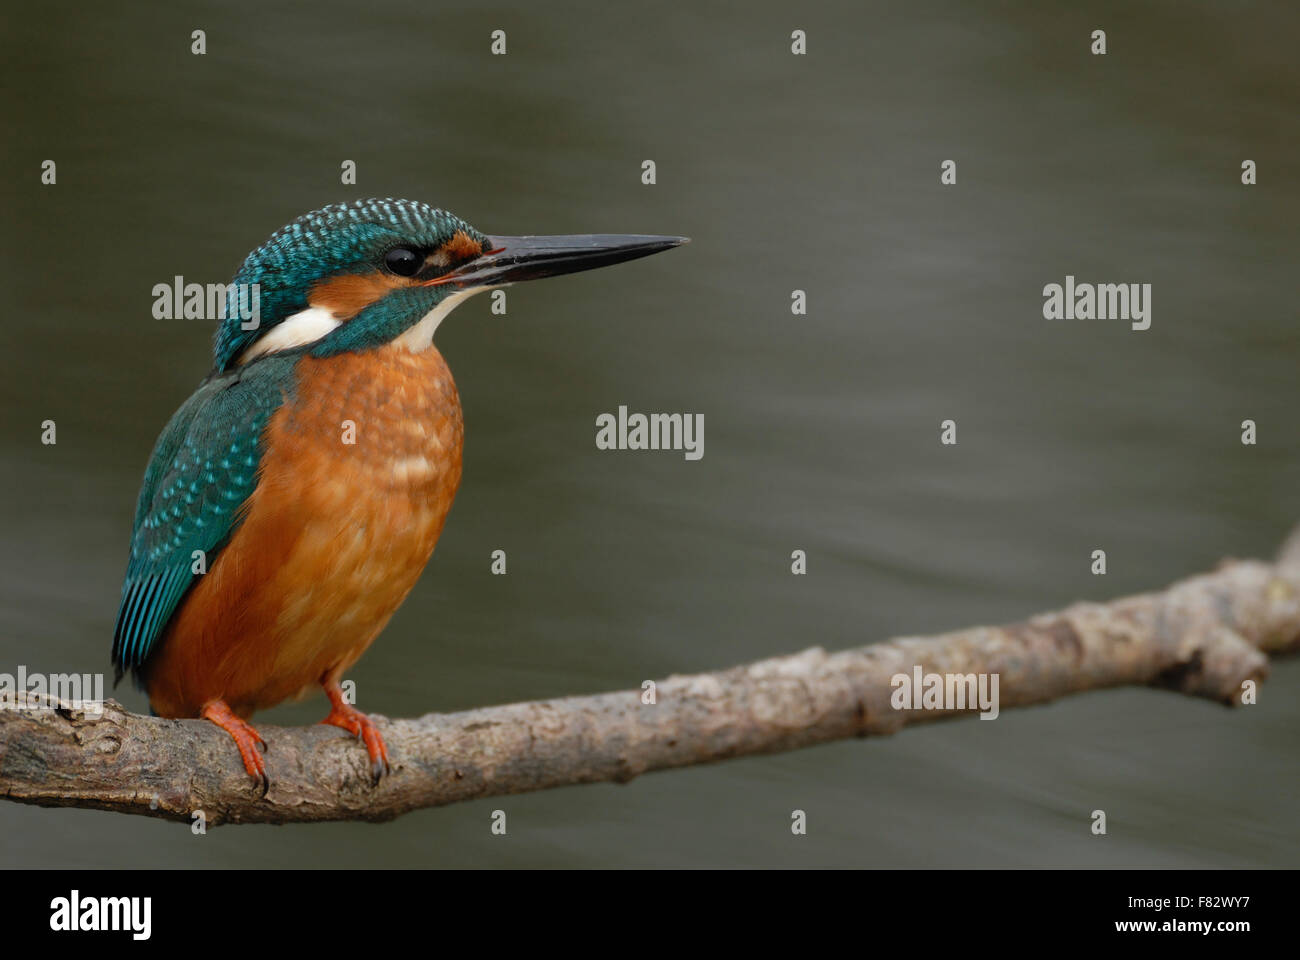 Common Kingfisher Kingfisher / homme / Optimize ( Alcedo atthis ) se trouve en position typique sur une branche au-dessus de l'eau qui coule. Banque D'Images